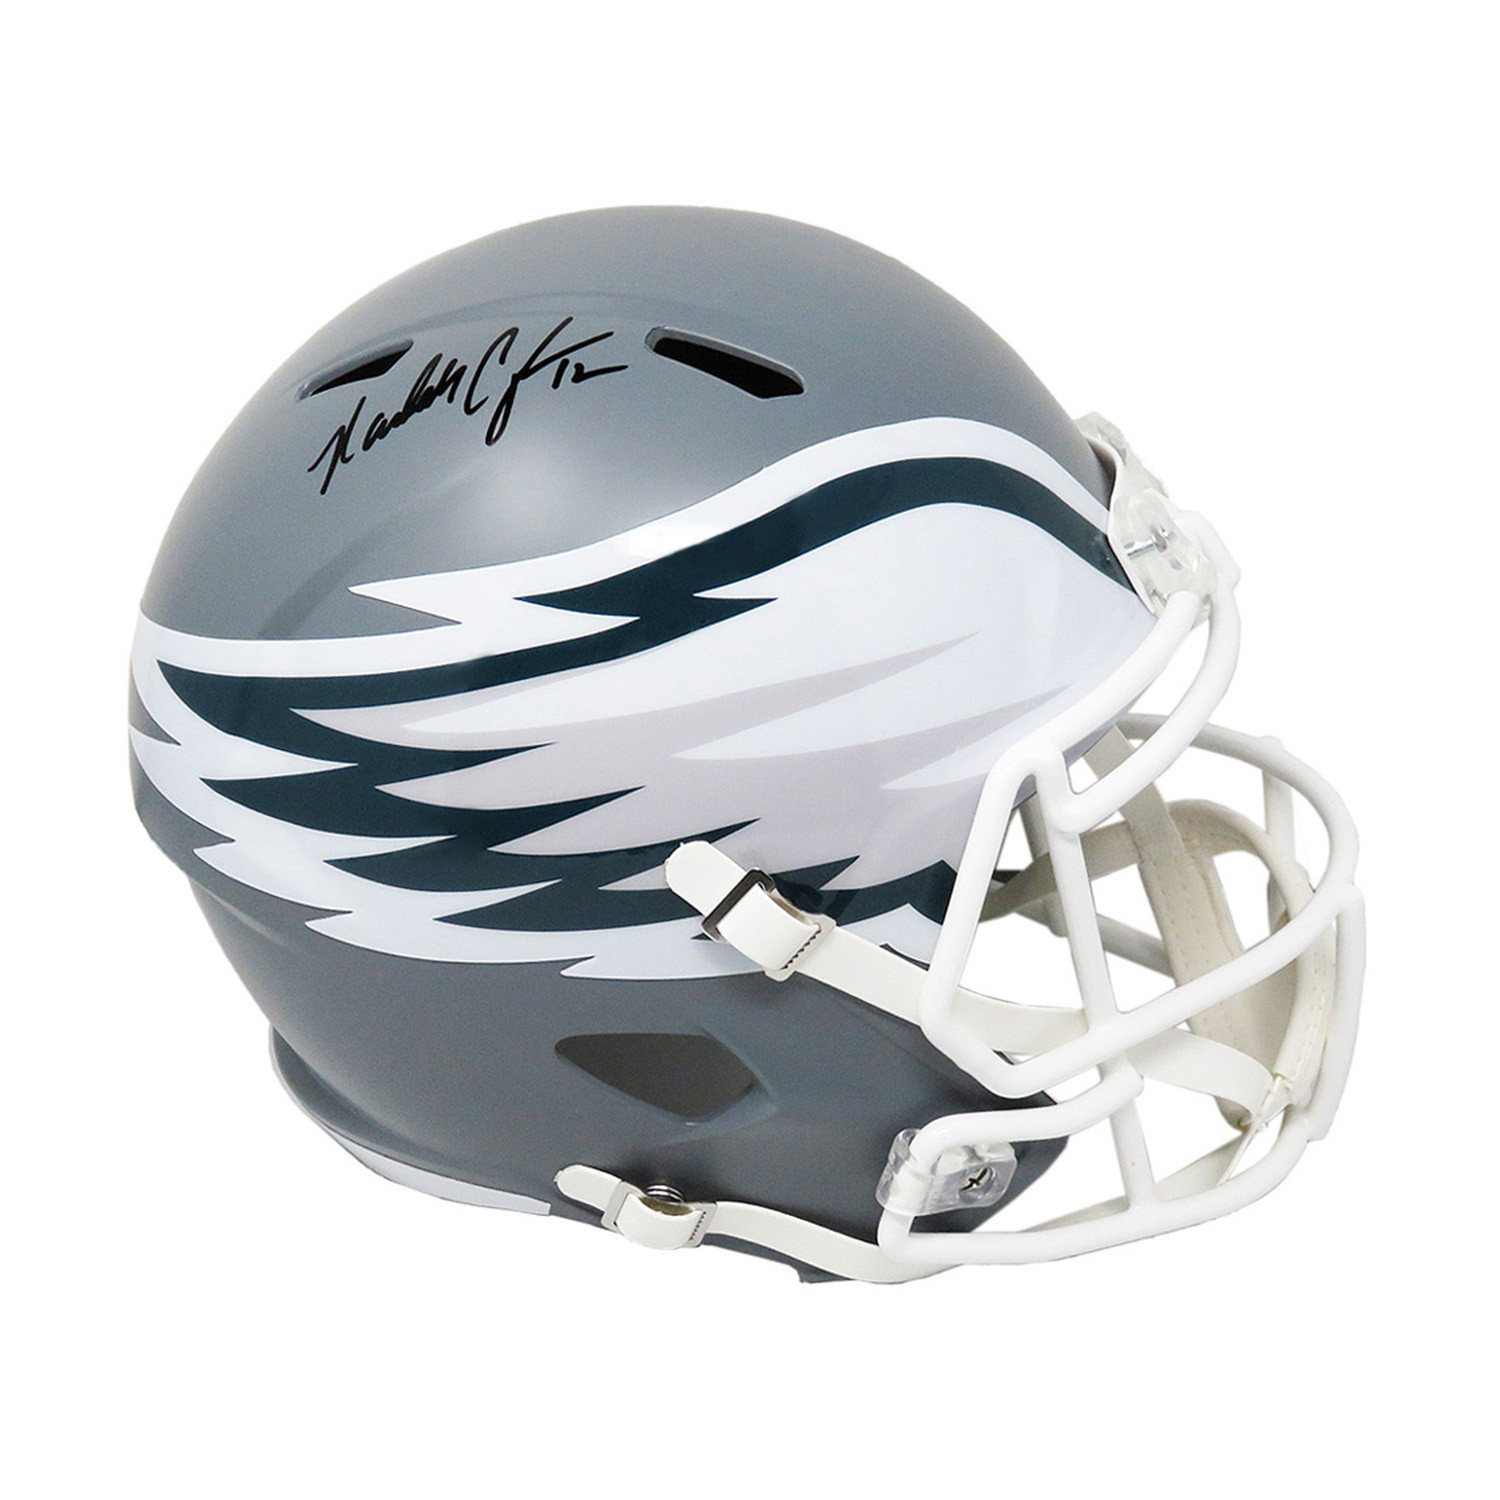 Riddell Speed Replica Helmet - Philadelphia Eagles, One Size